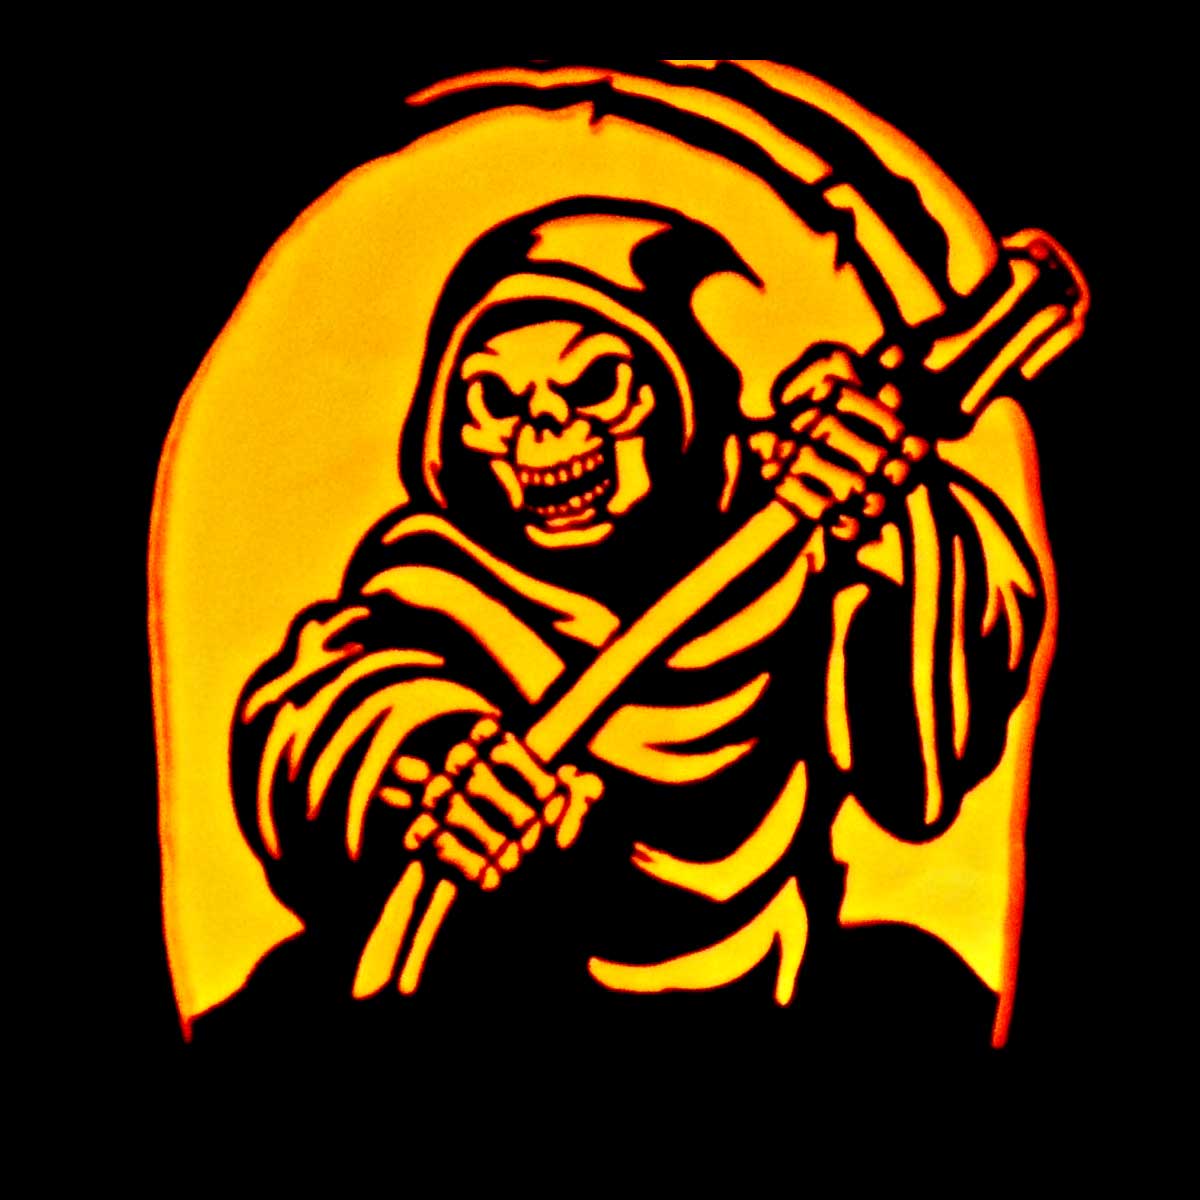 Grim Reaper Pumpkin Carving Ideas